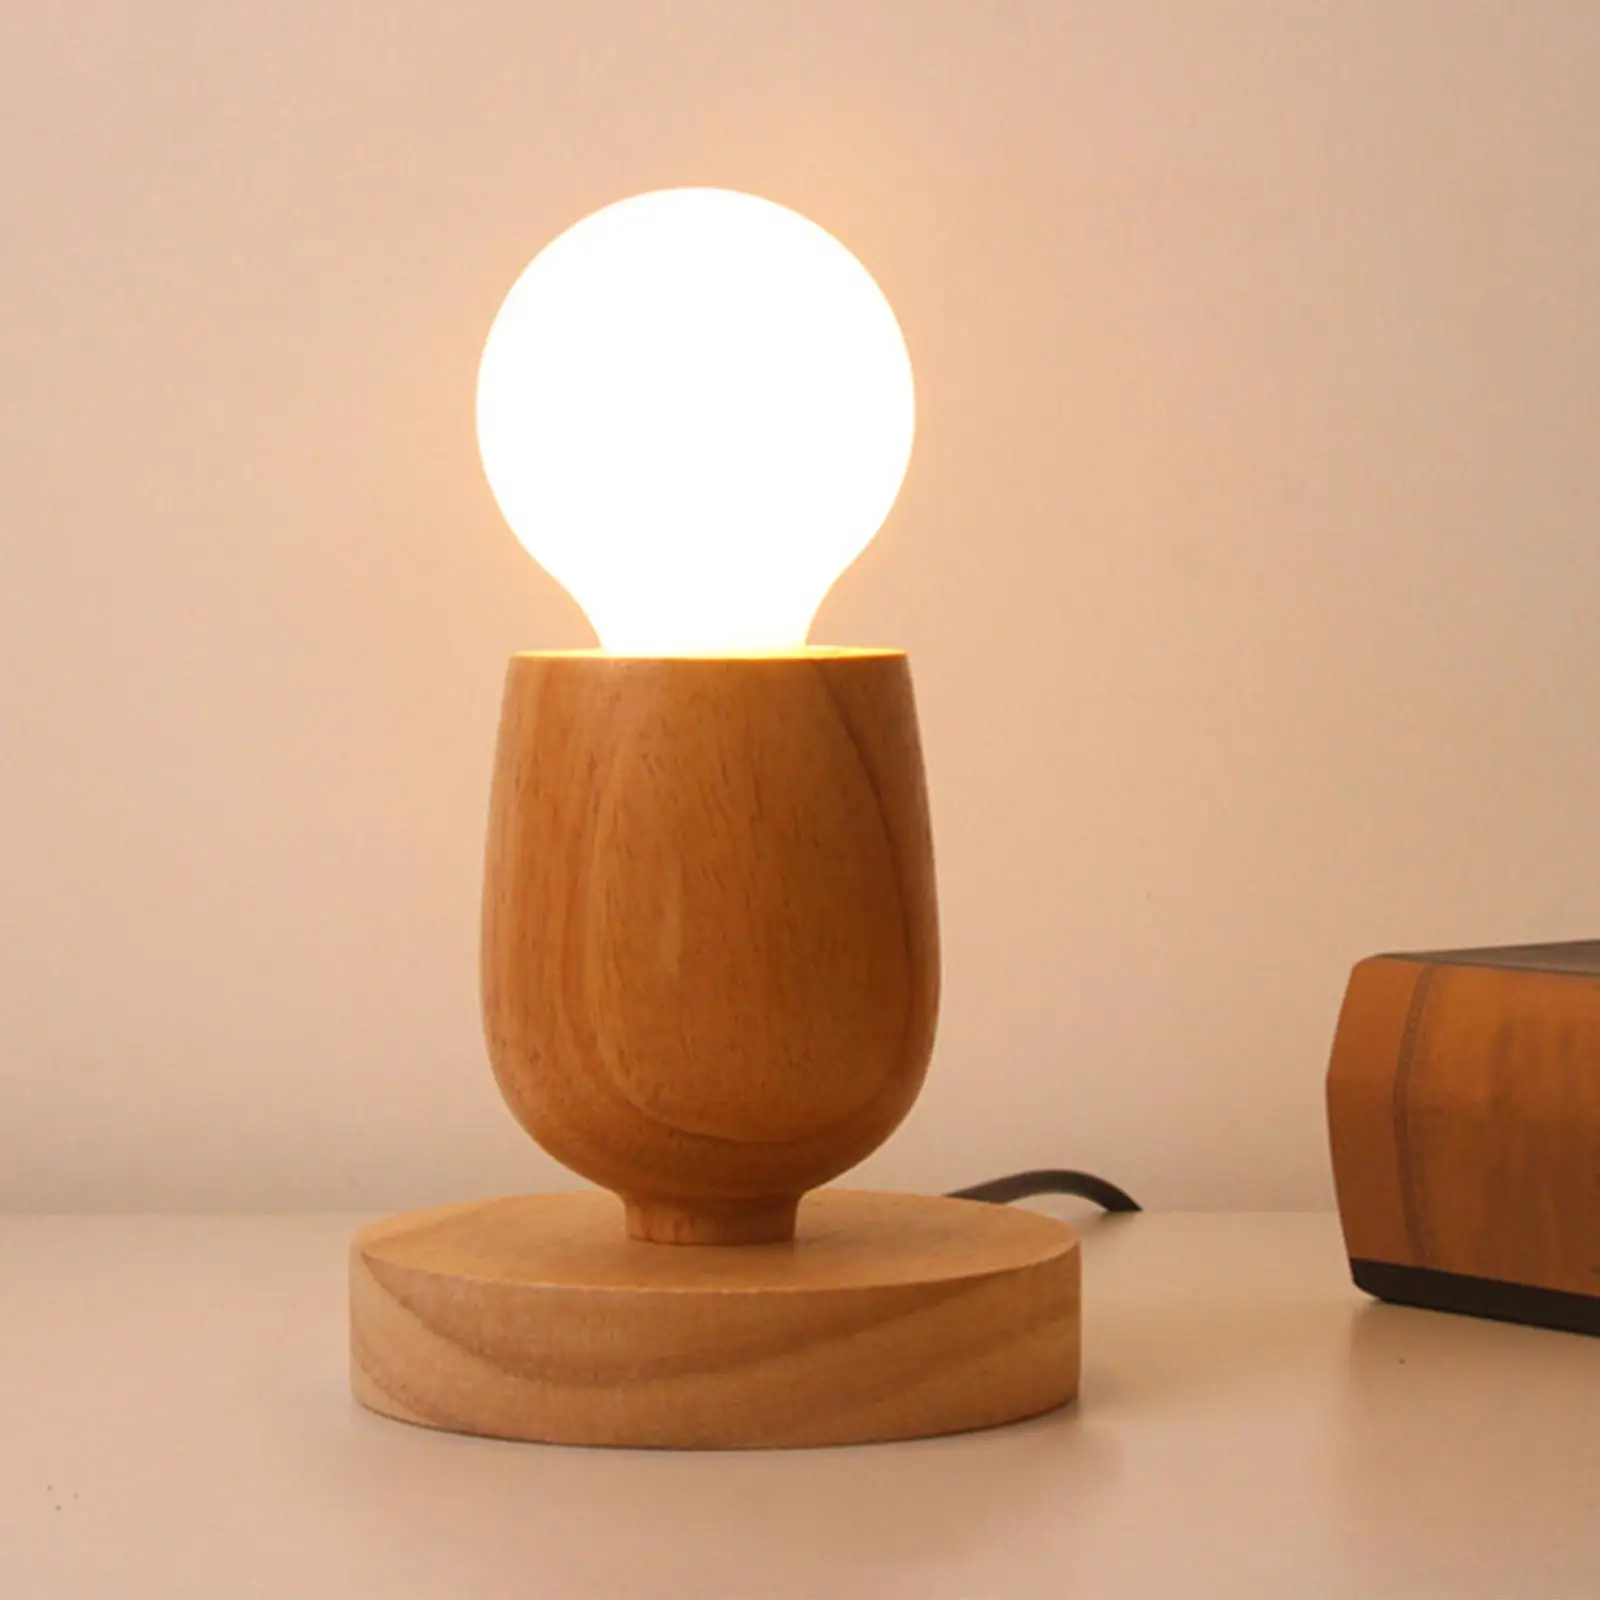 Retro Style E27 Wooden Base Desk Lamp Bedside Light Holder Display Stand Bulb Socket for Kids Room Home Study Bedroom EU Plug